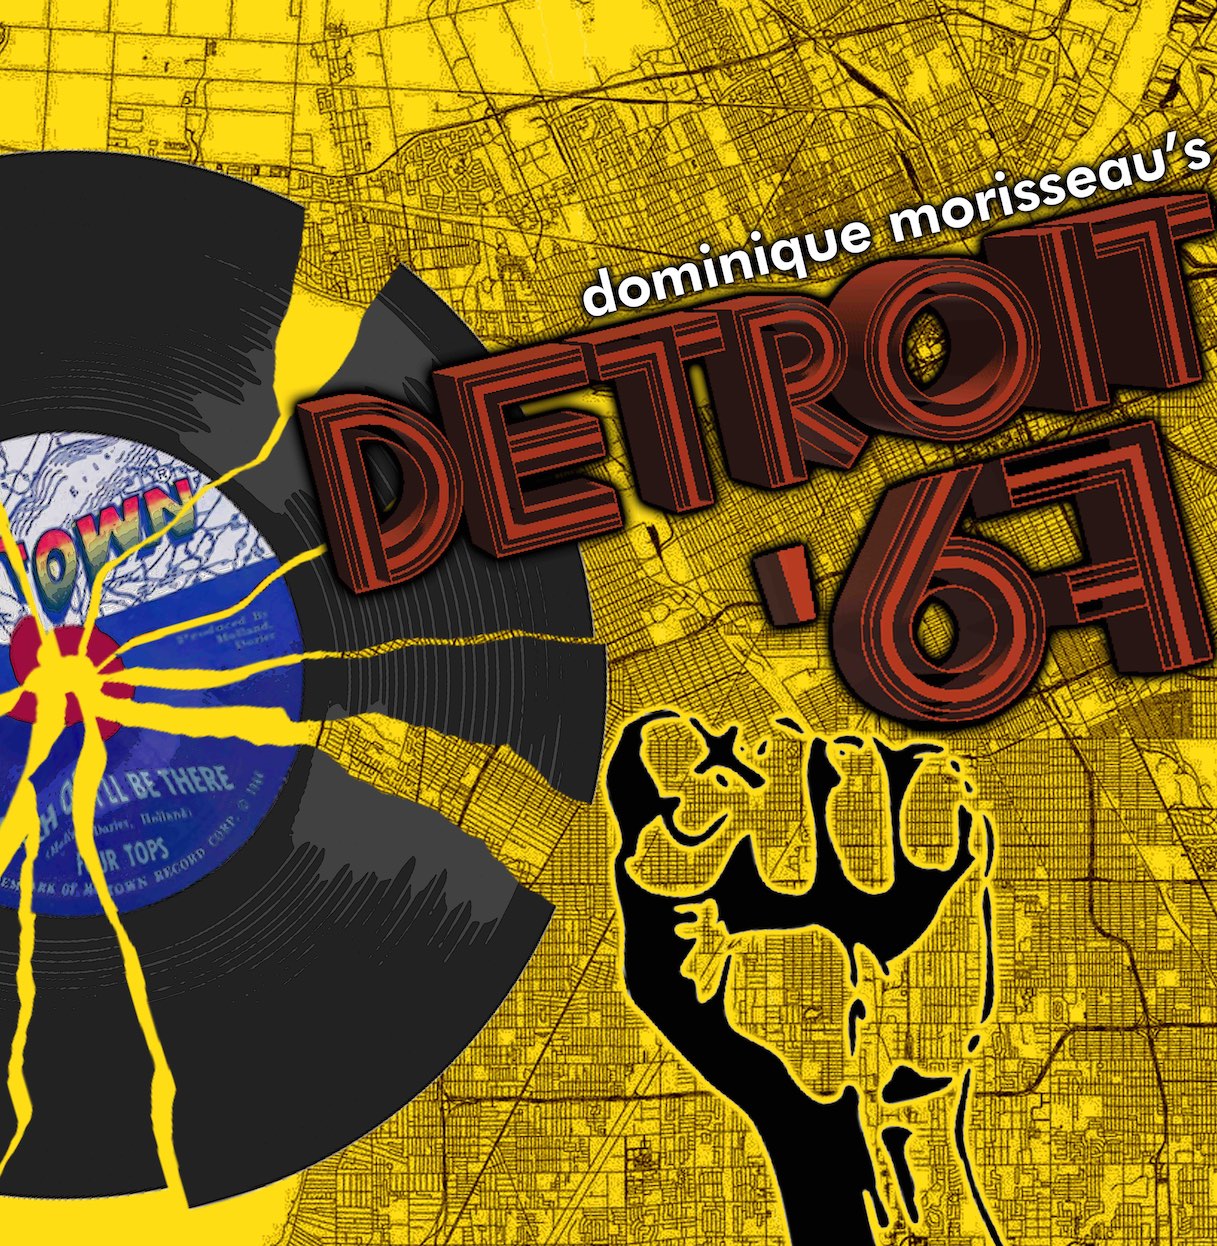 Poster for "Detroit '67"